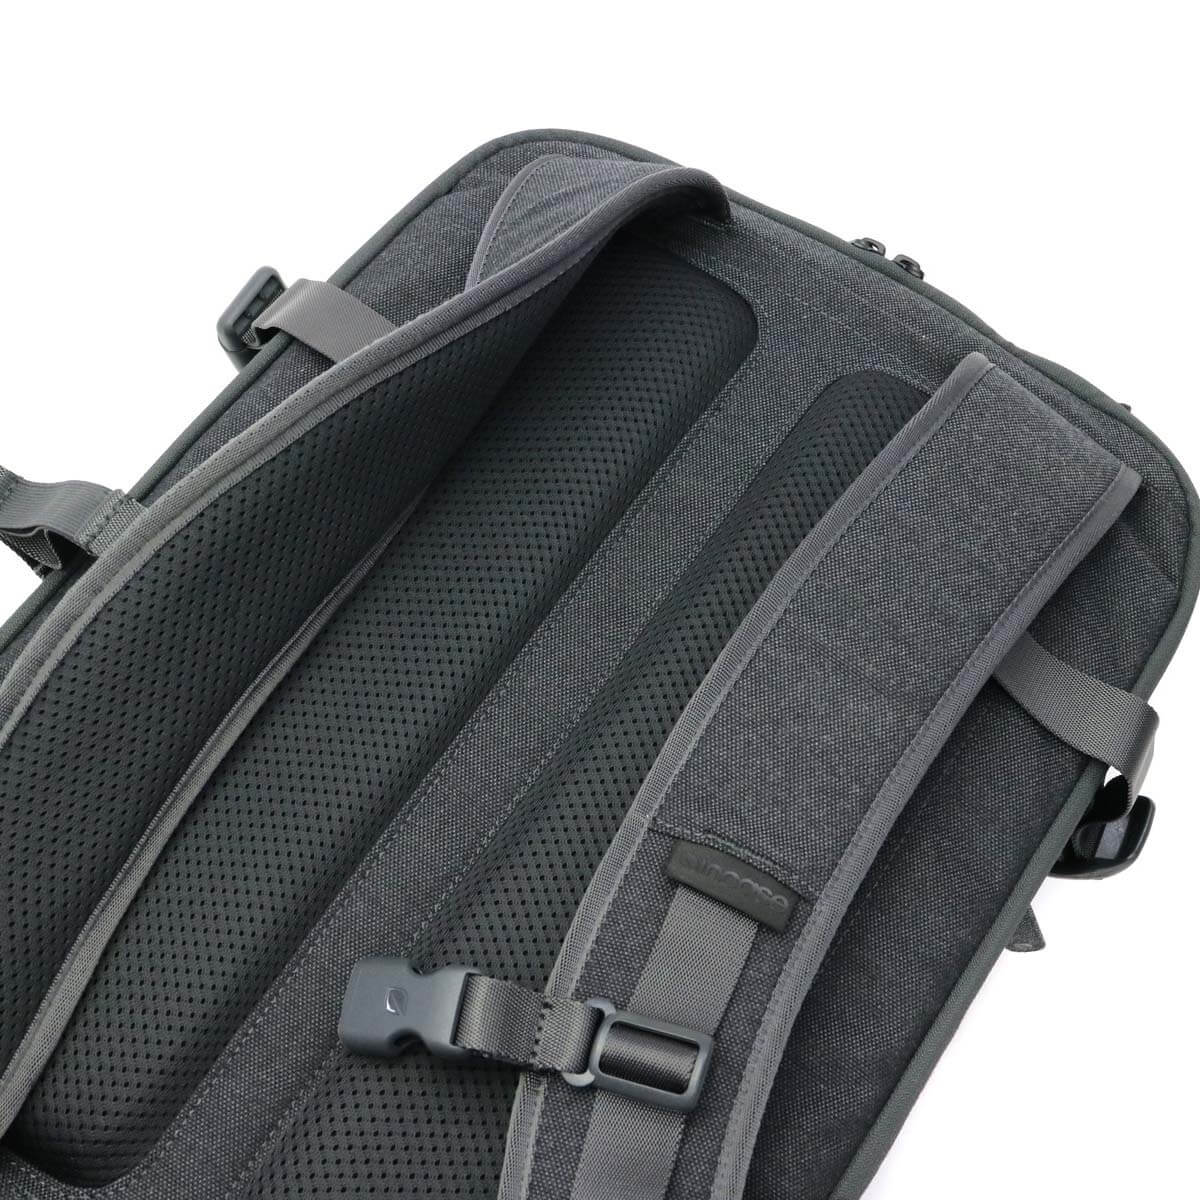 日本正規品】incase インケース EO Travel Backpack 25L バックパック